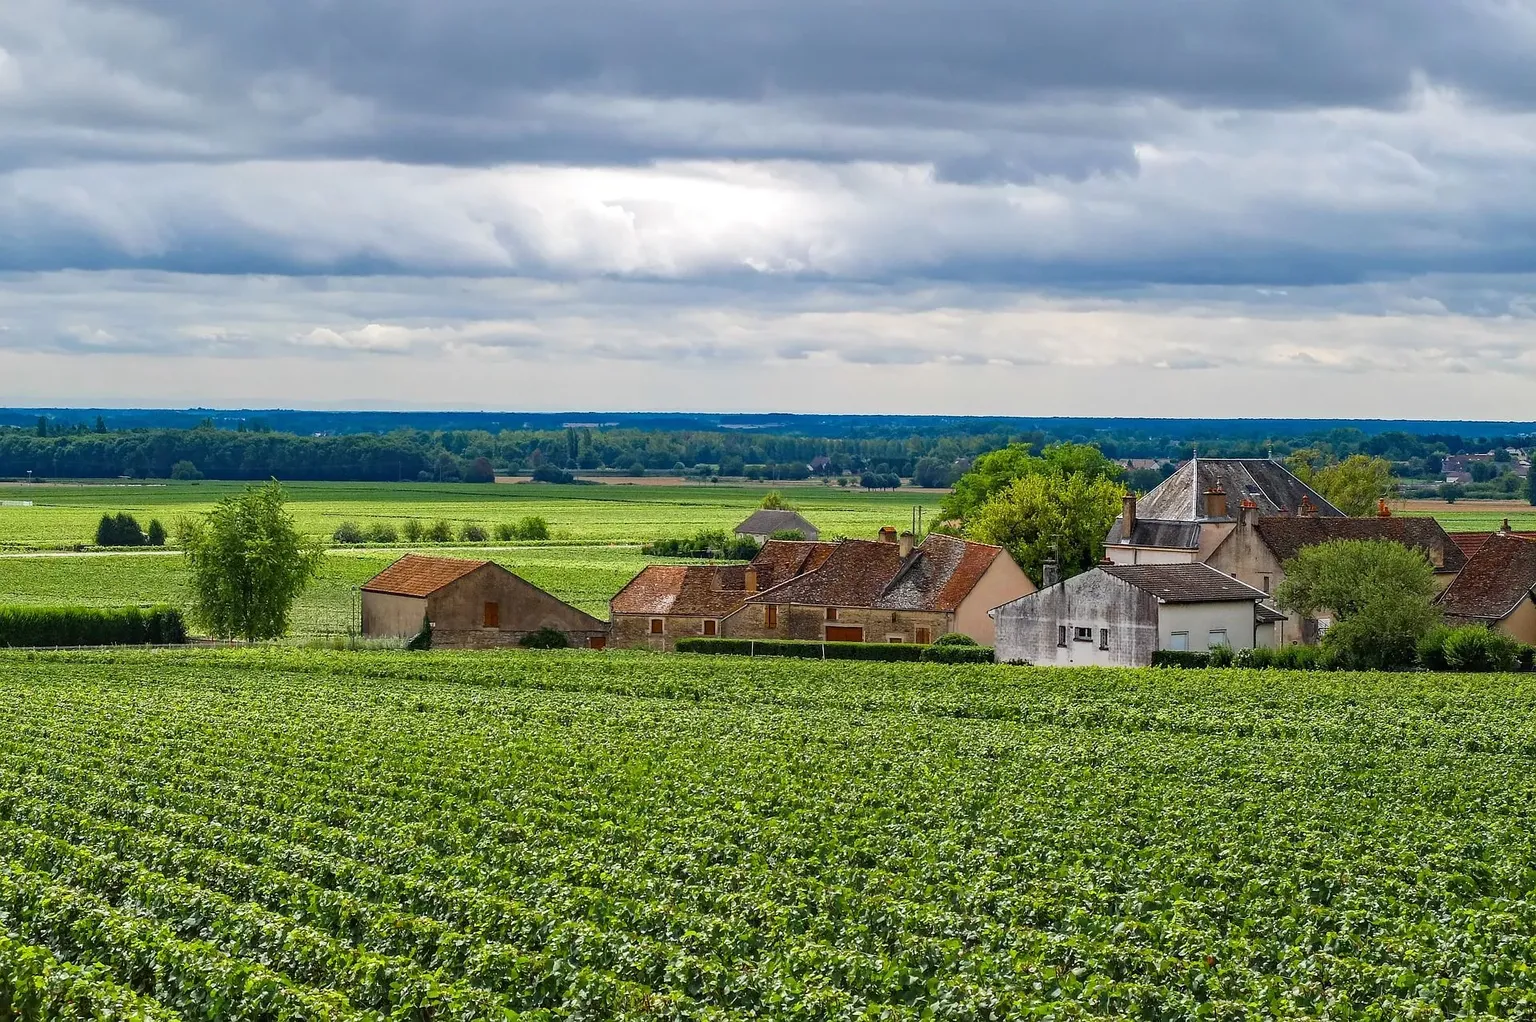 Bourgogne Franche Comte